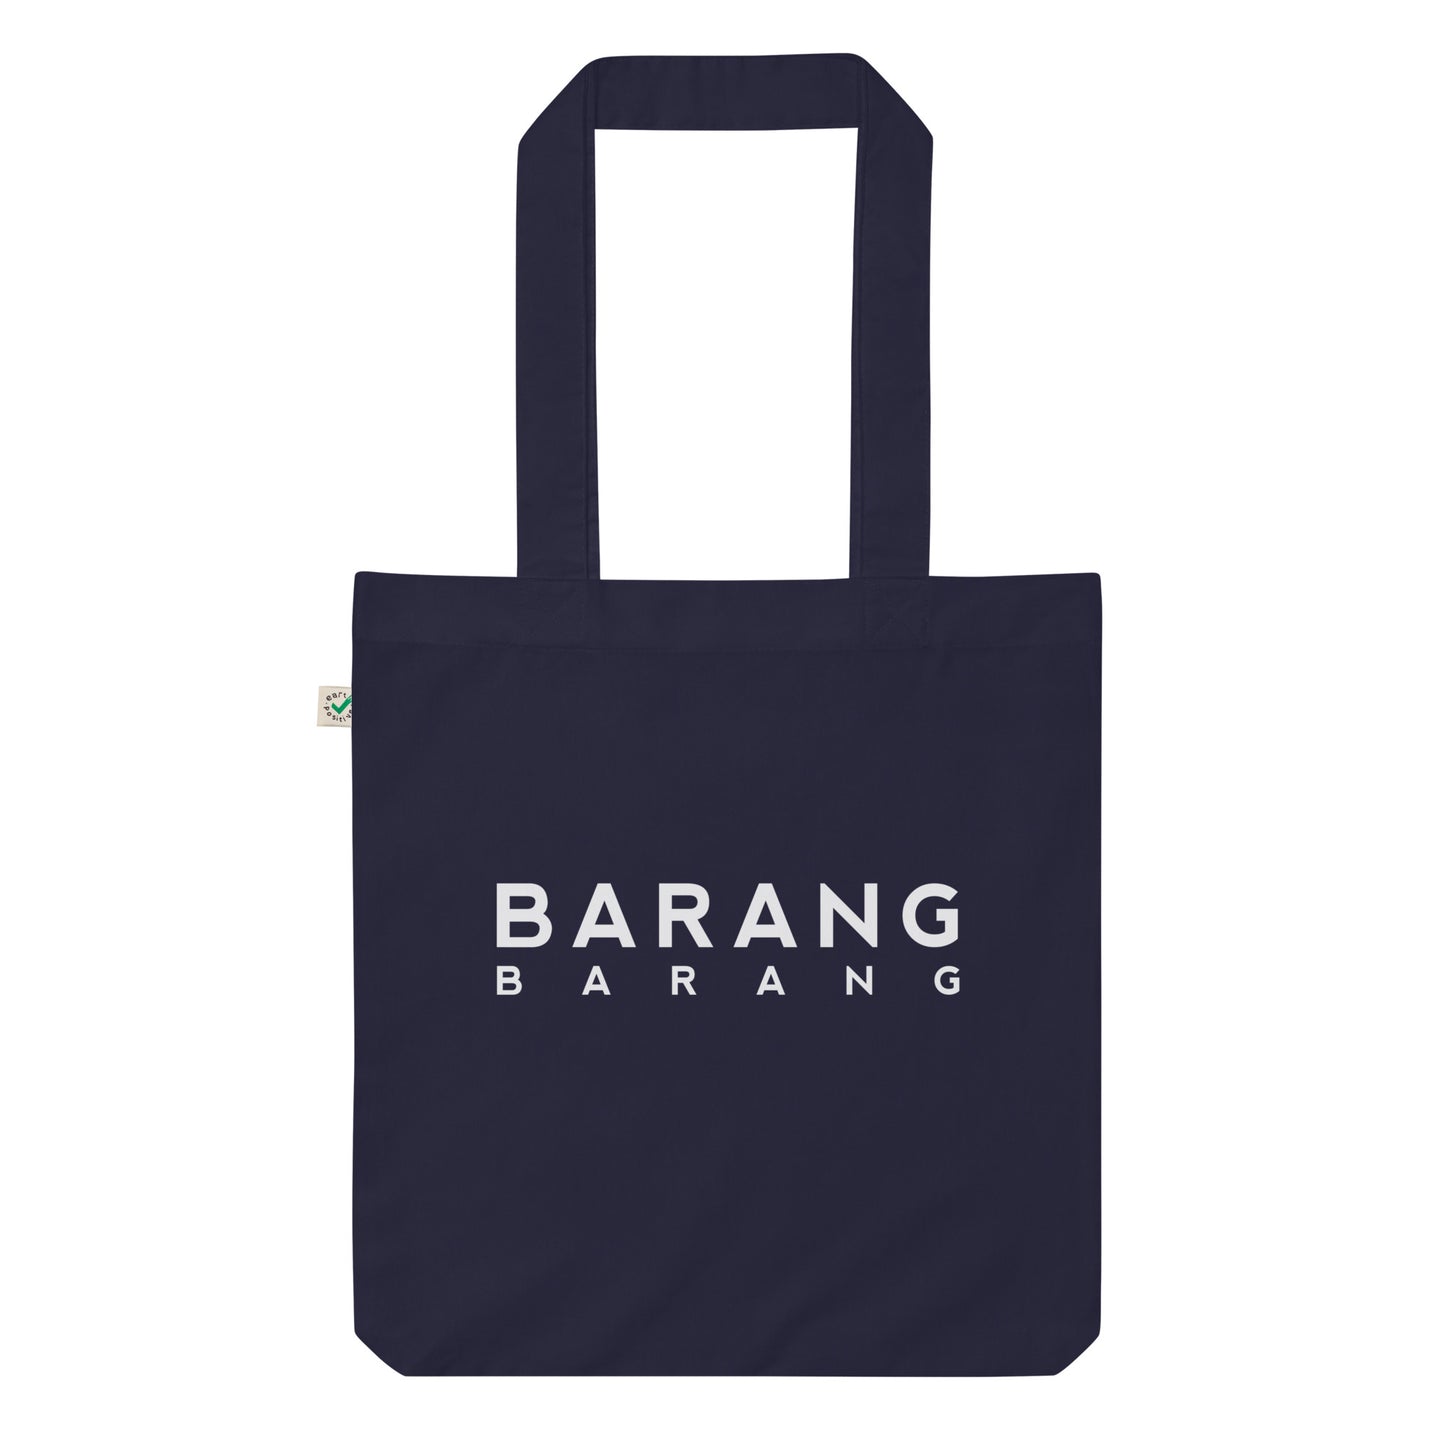 Barang Barang - Navy Blue Tote